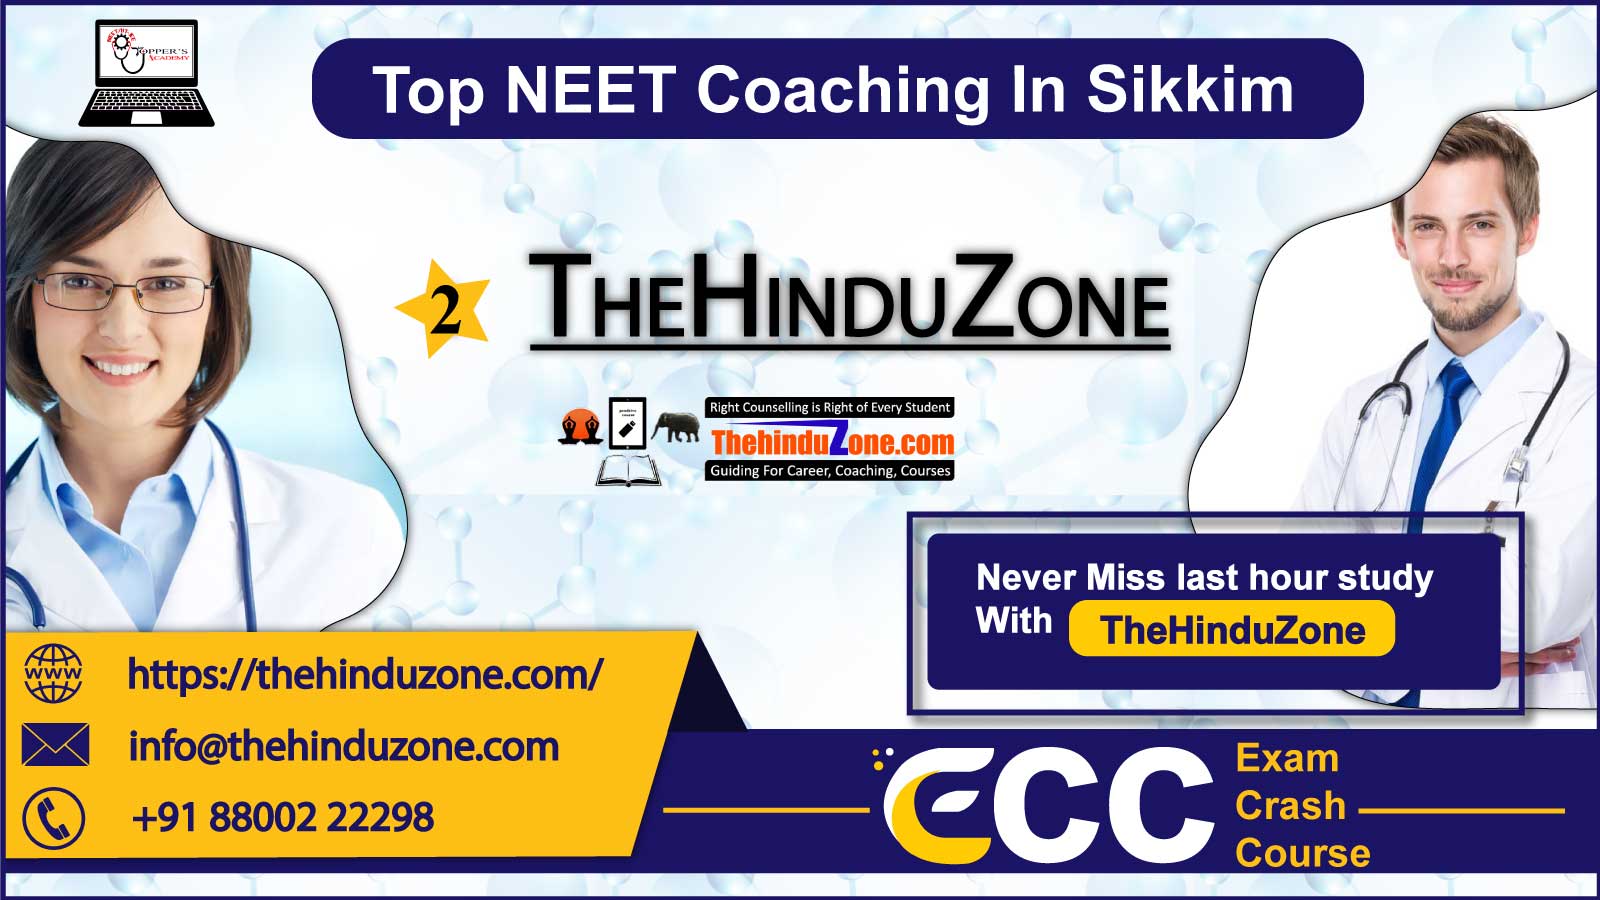 TheHinduZone NEET Coaching In Sikkim